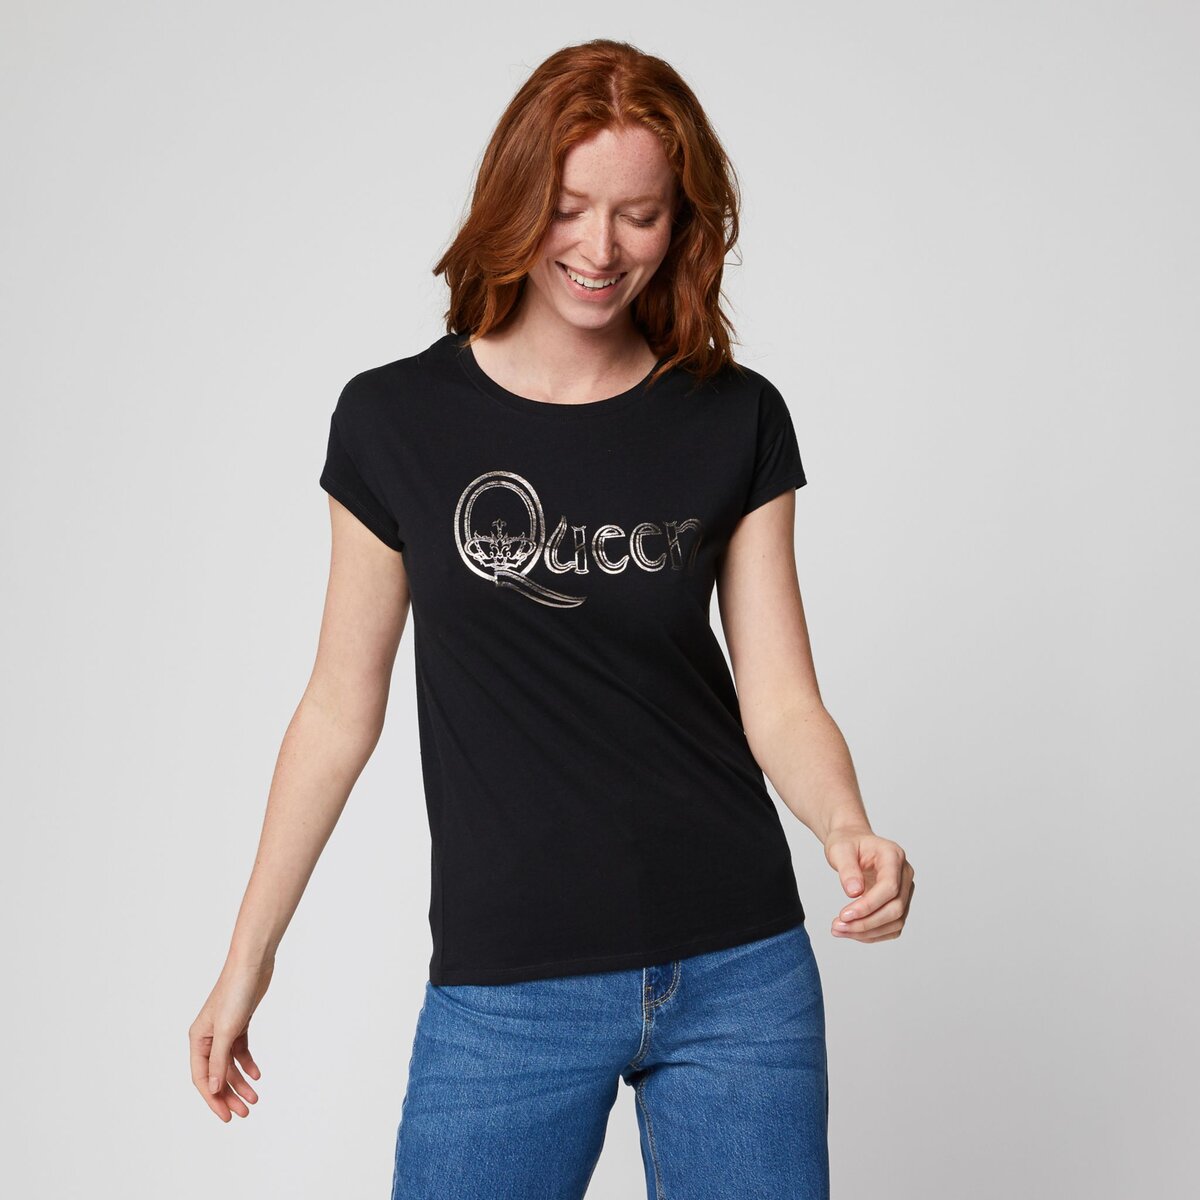 INEXTENSO T-shirt manches courtes noir femme Queen